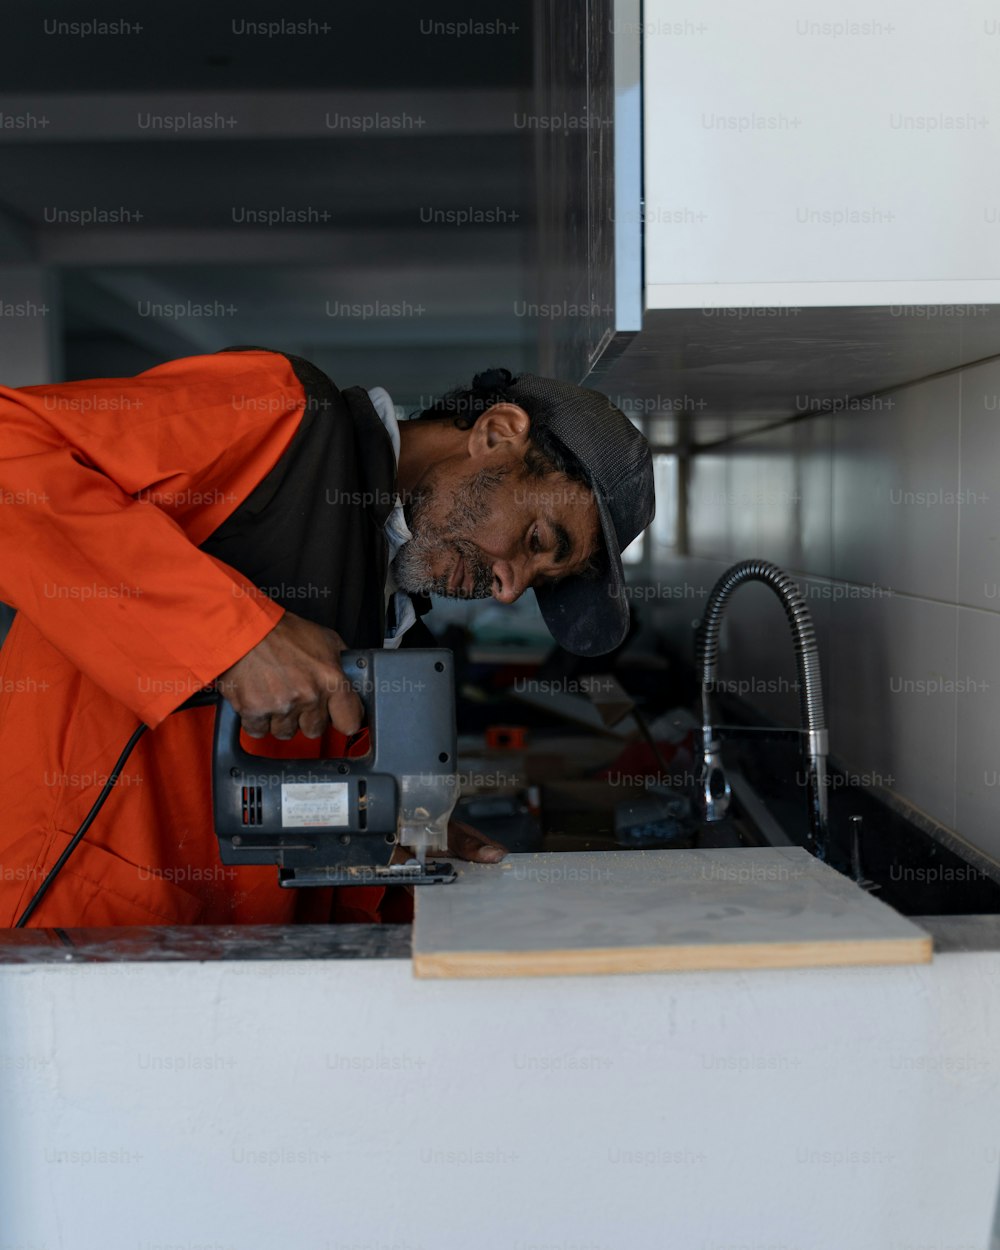 Un homme en combinaison orange travaillant sur une machine